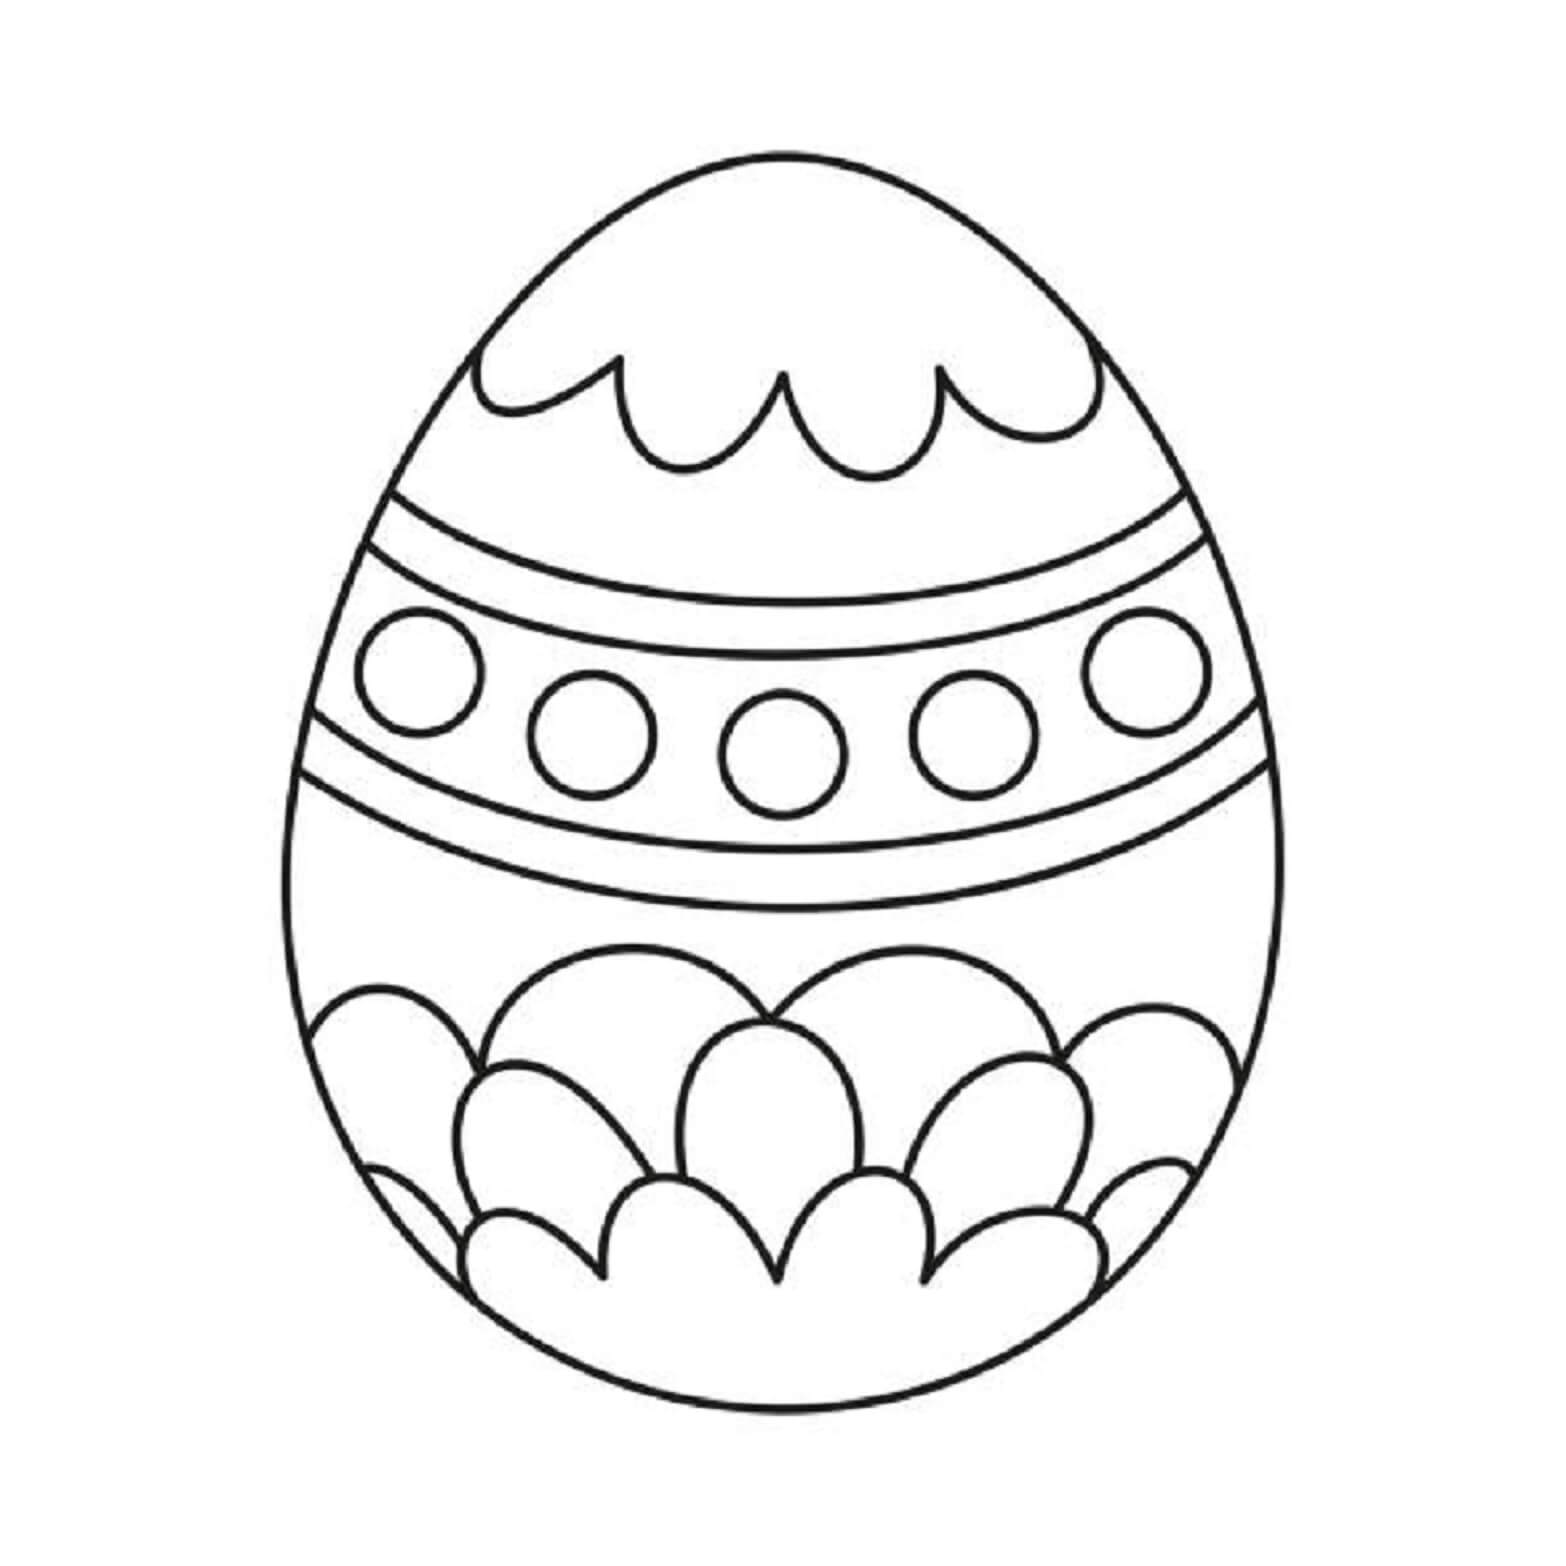 Ovos de Pascoa para colorir